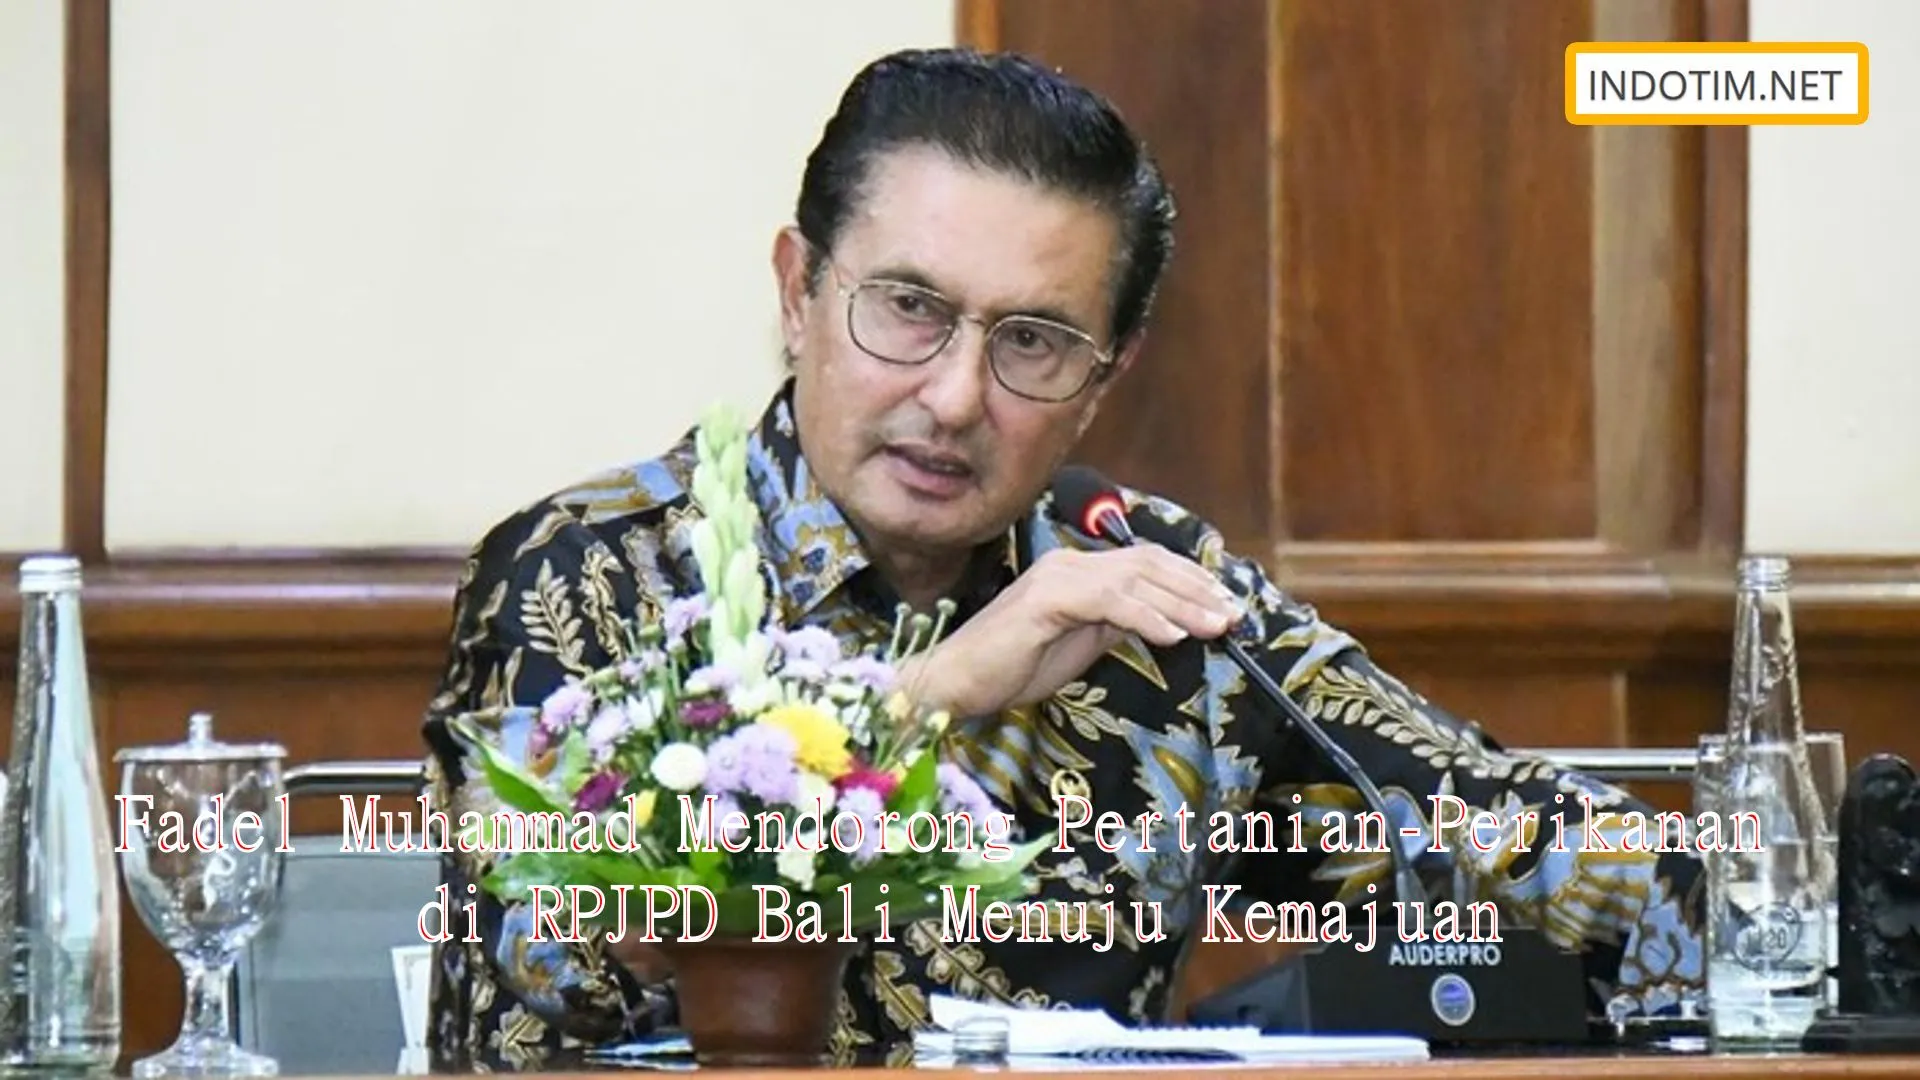 Fadel Muhammad Mendorong Pertanian-Perikanan di RPJPD Bali Menuju Kemajuan